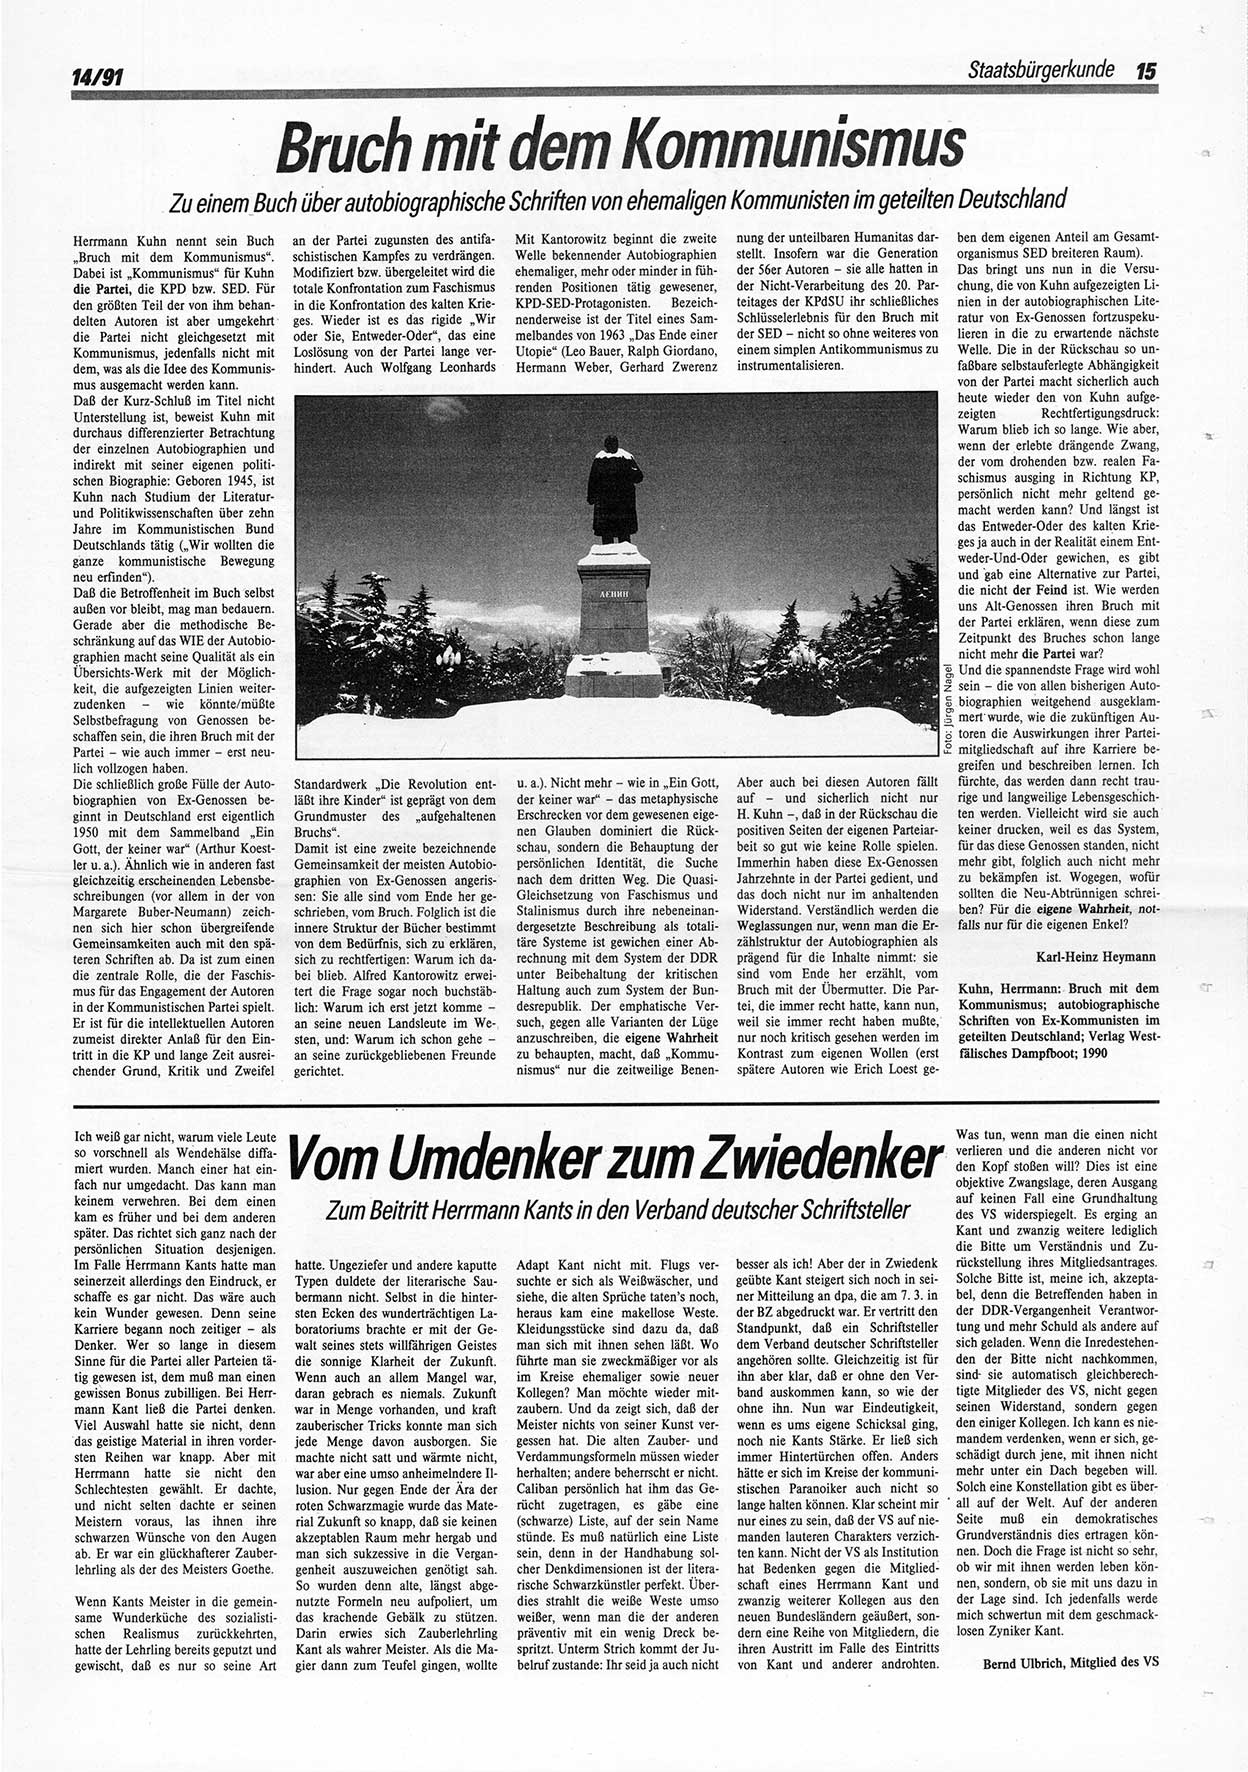 Die Andere, Unabhängige Wochenzeitung für Politik, Kultur und Kunst, Ausgabe 14 vom 3.4.1991, Seite 15 (And. W.-Zg. Ausg. 14 1991, S. 15)